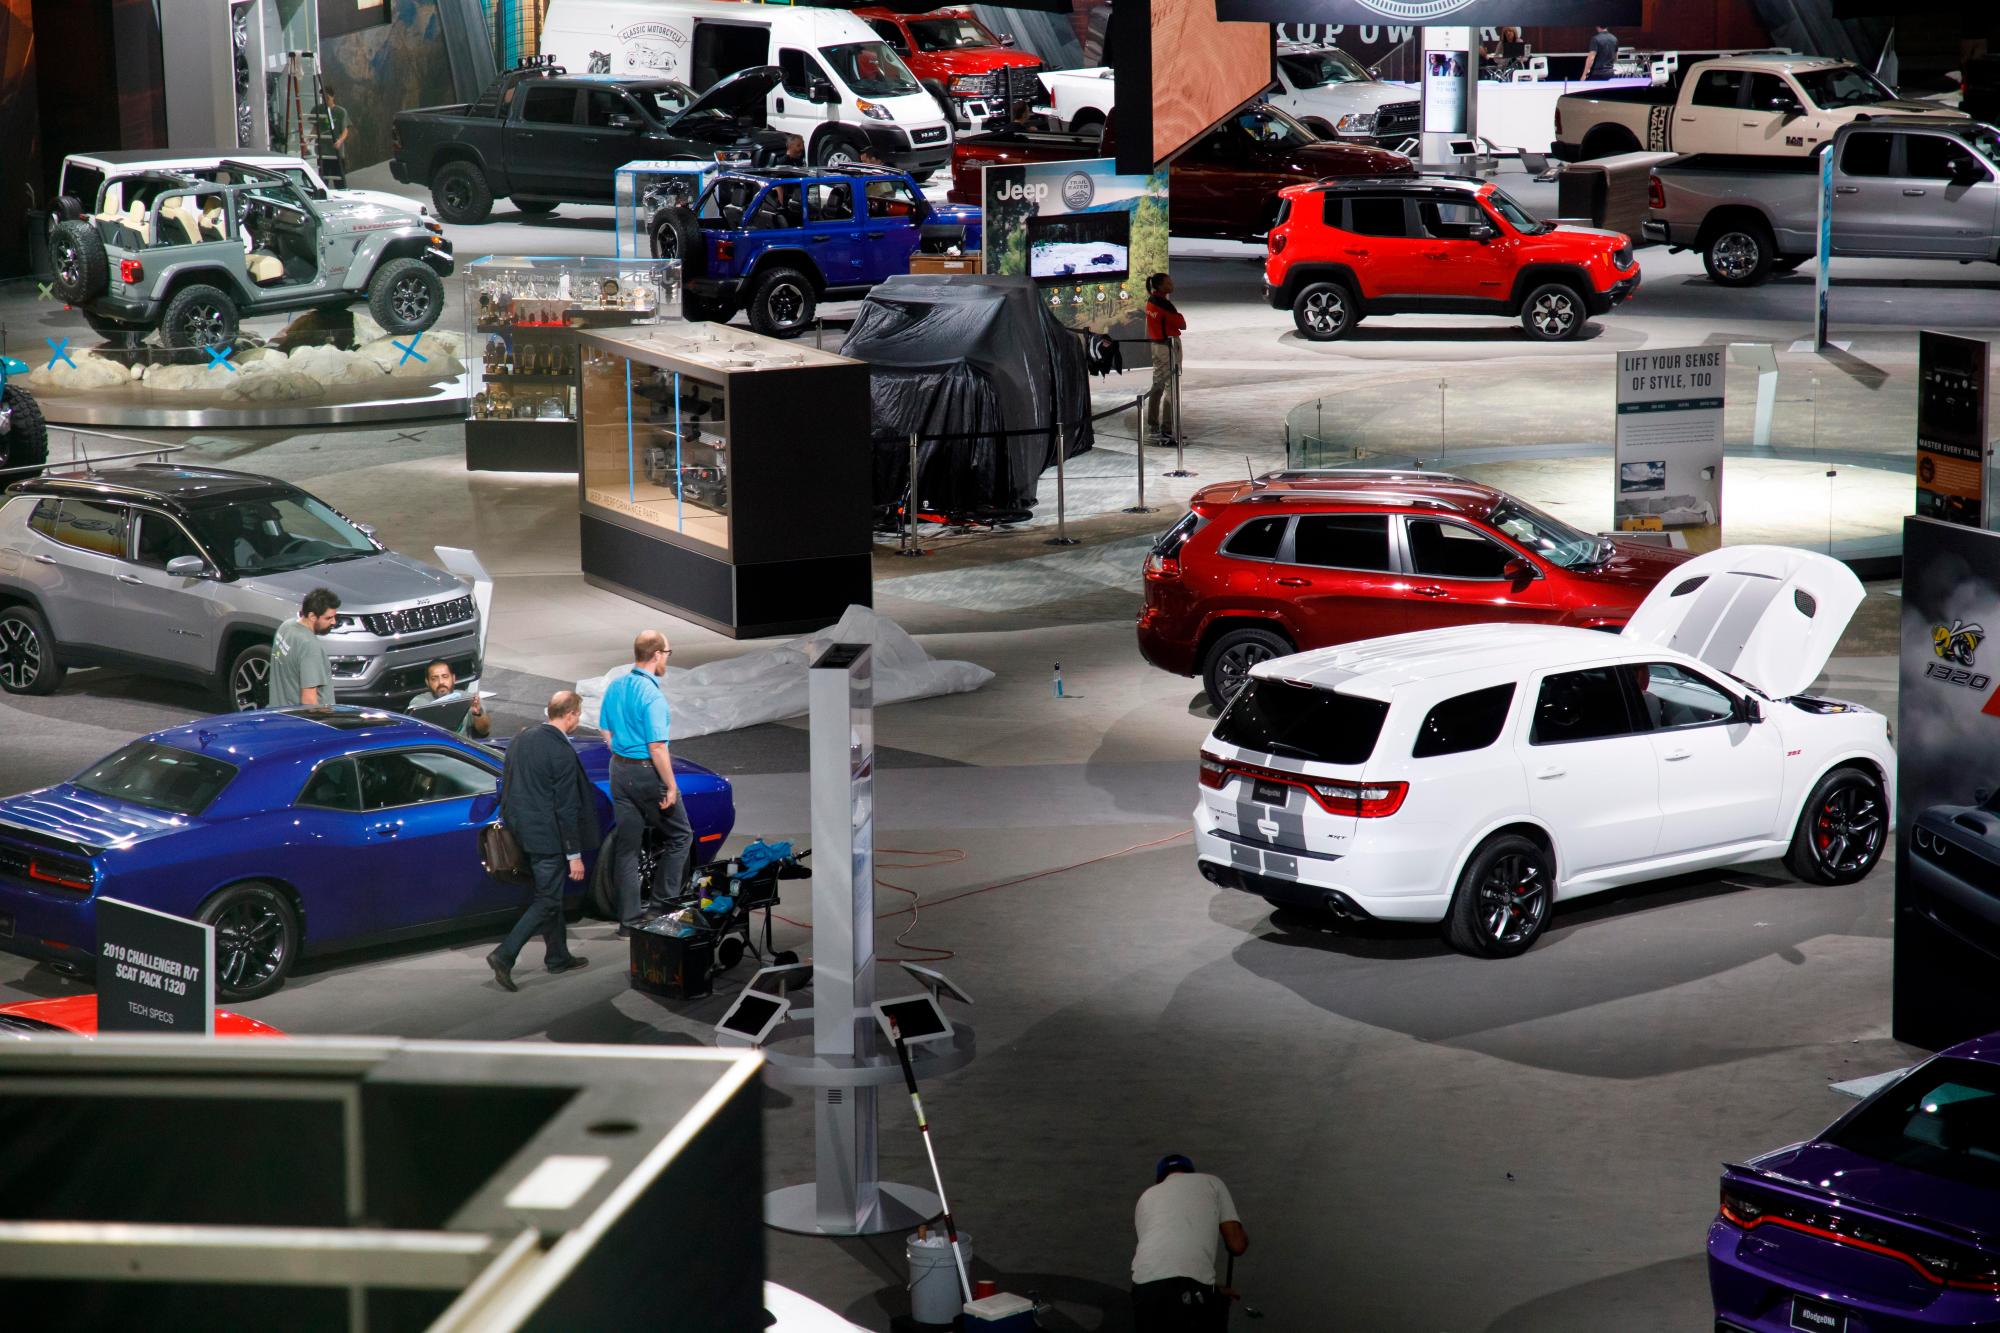 Trabajadores preparan la sala de exhibición hoy antes del Auto Show Automobility LA en Los Ángeles, California (EE. UU.). El espectáculo contará con más de 60 lanzamientos de vehículos.